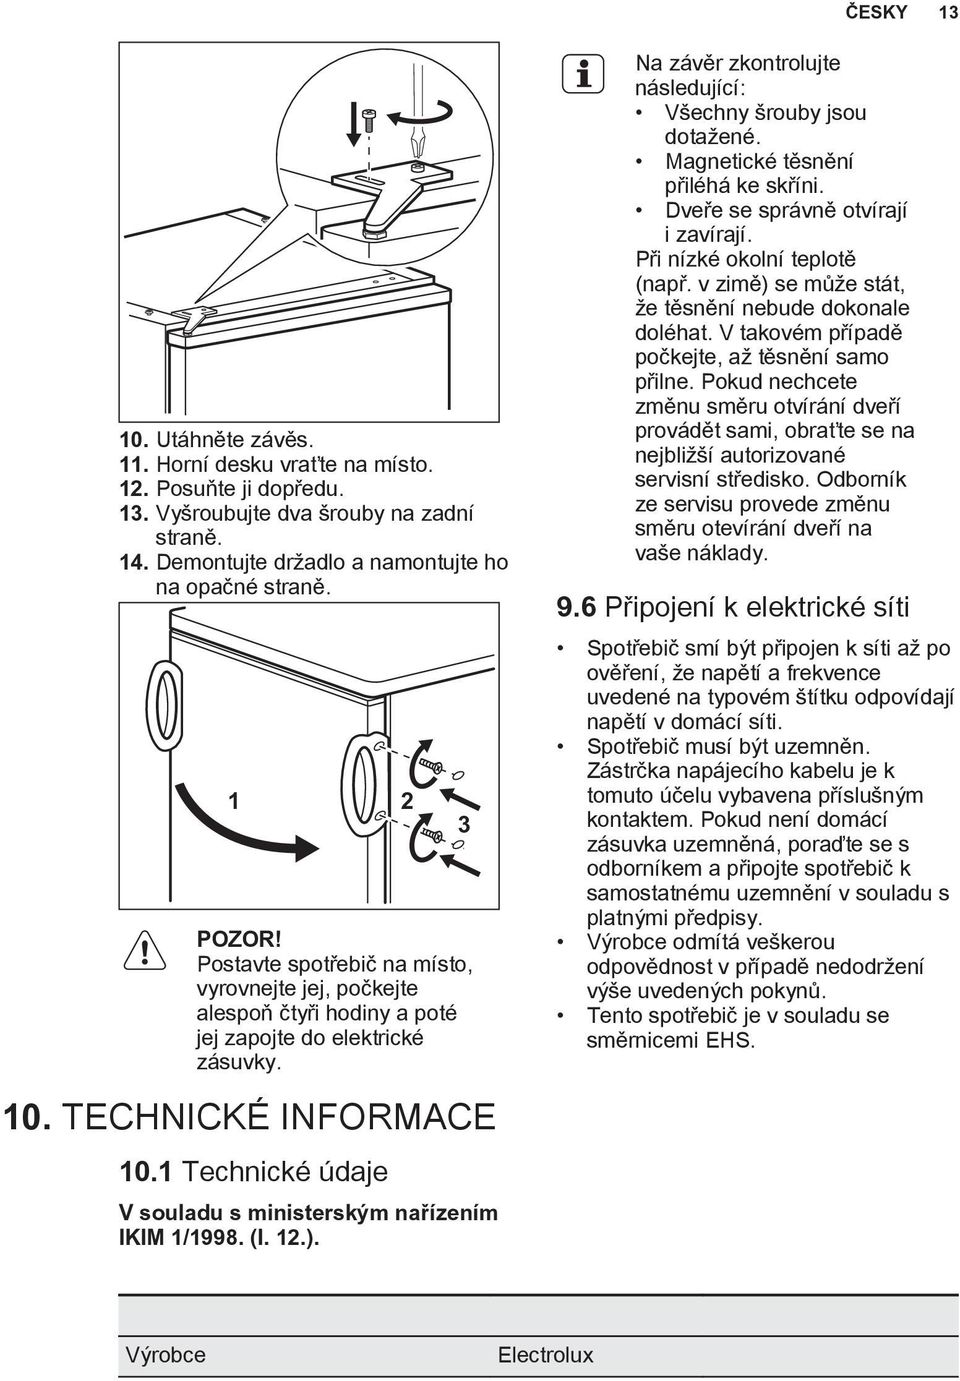 1 Technické údaje V souladu s ministerským nařízením IKIM 1/1998. (I. 12.). 3 Na závěr zkontrolujte následující: Všechny šrouby jsou dotažené. Magnetické těsnění přiléhá ke skříni.